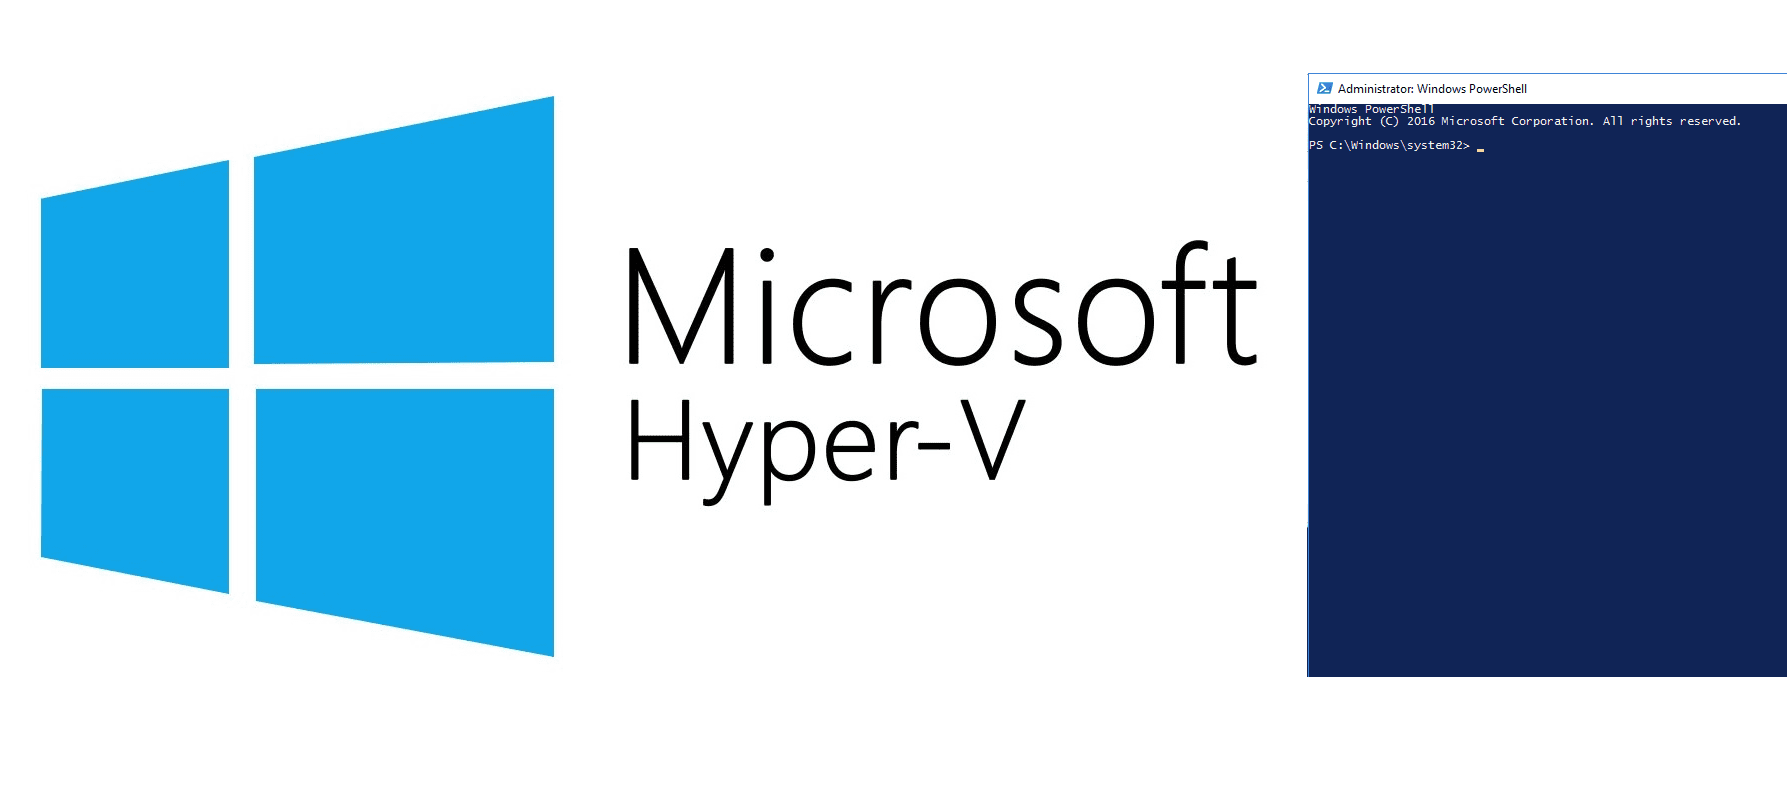 Hyper-V and PowerShell